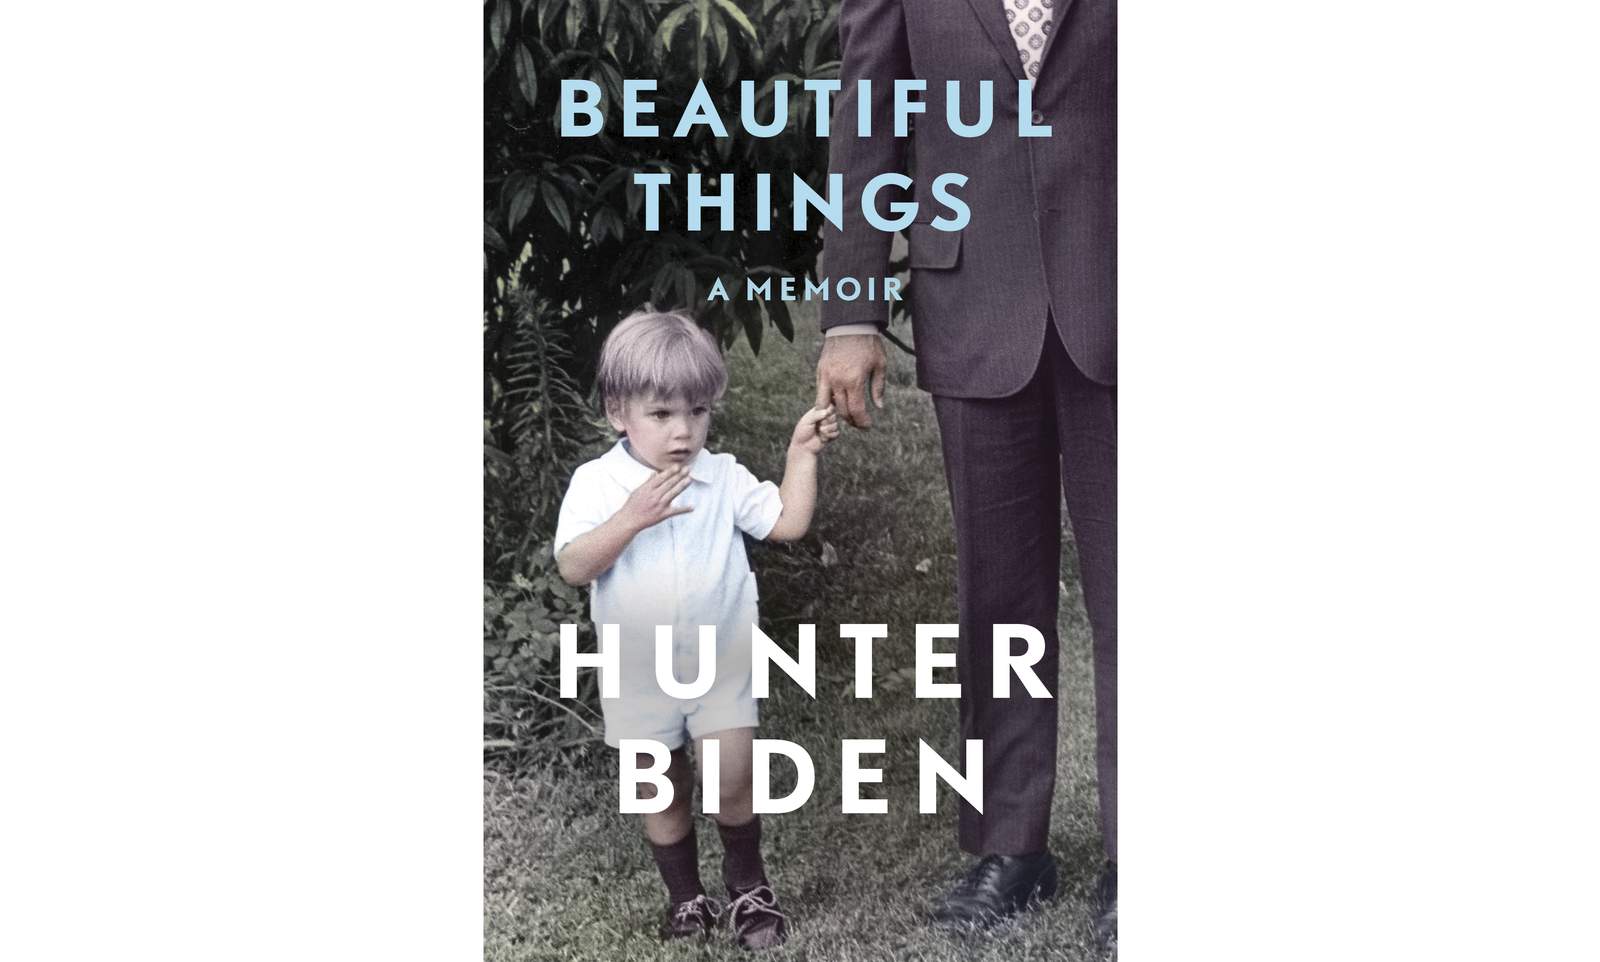 Hunter Biden’s memoir ‘Beautiful Things’ out in April